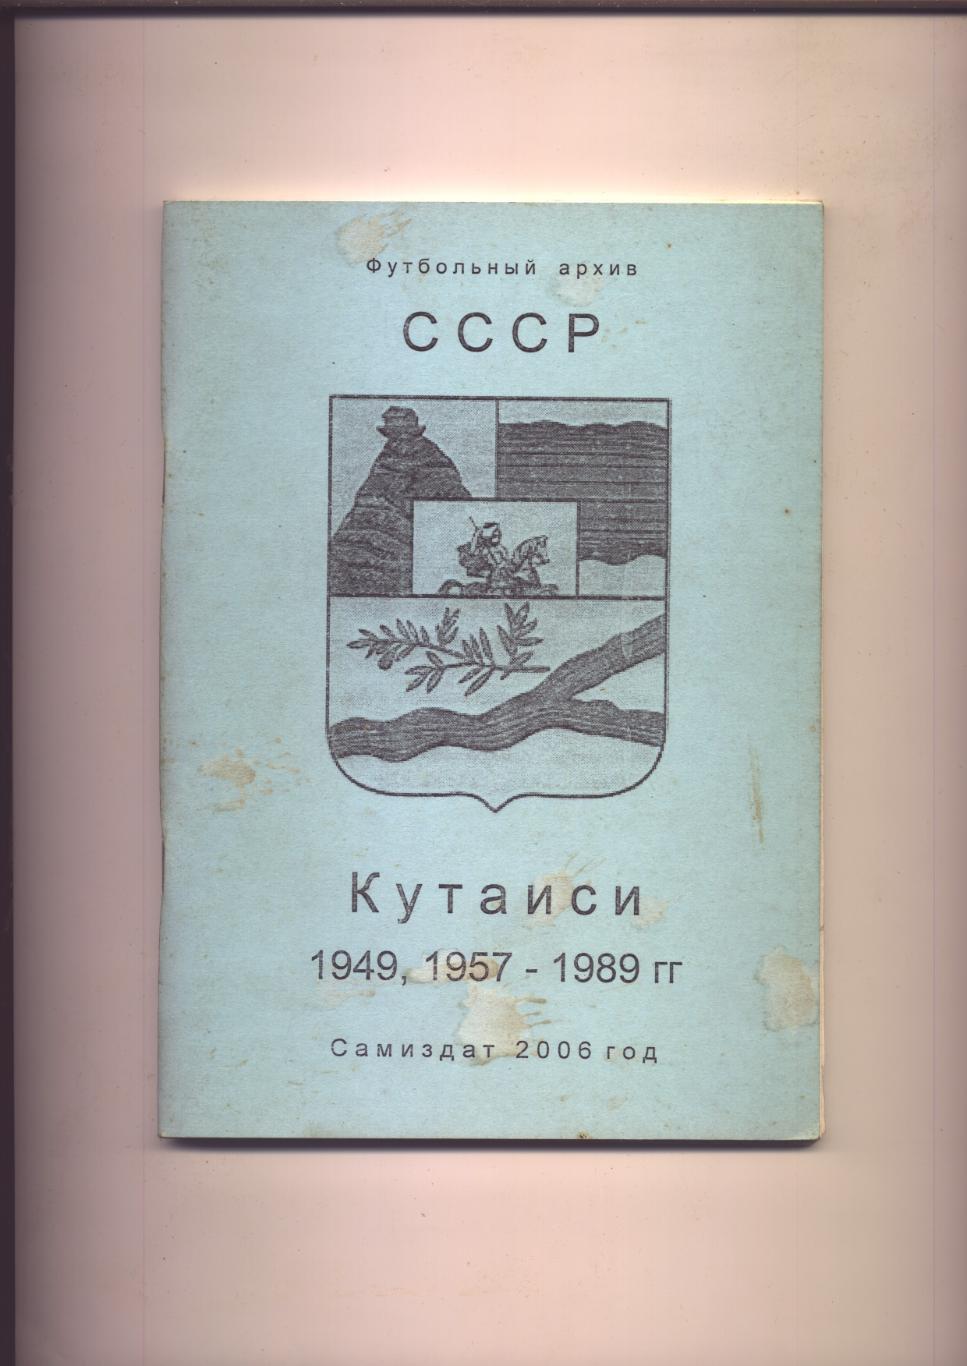 Футбольный архив СССР Кутаиси 1949, 1957 - 1989 гг Статистика